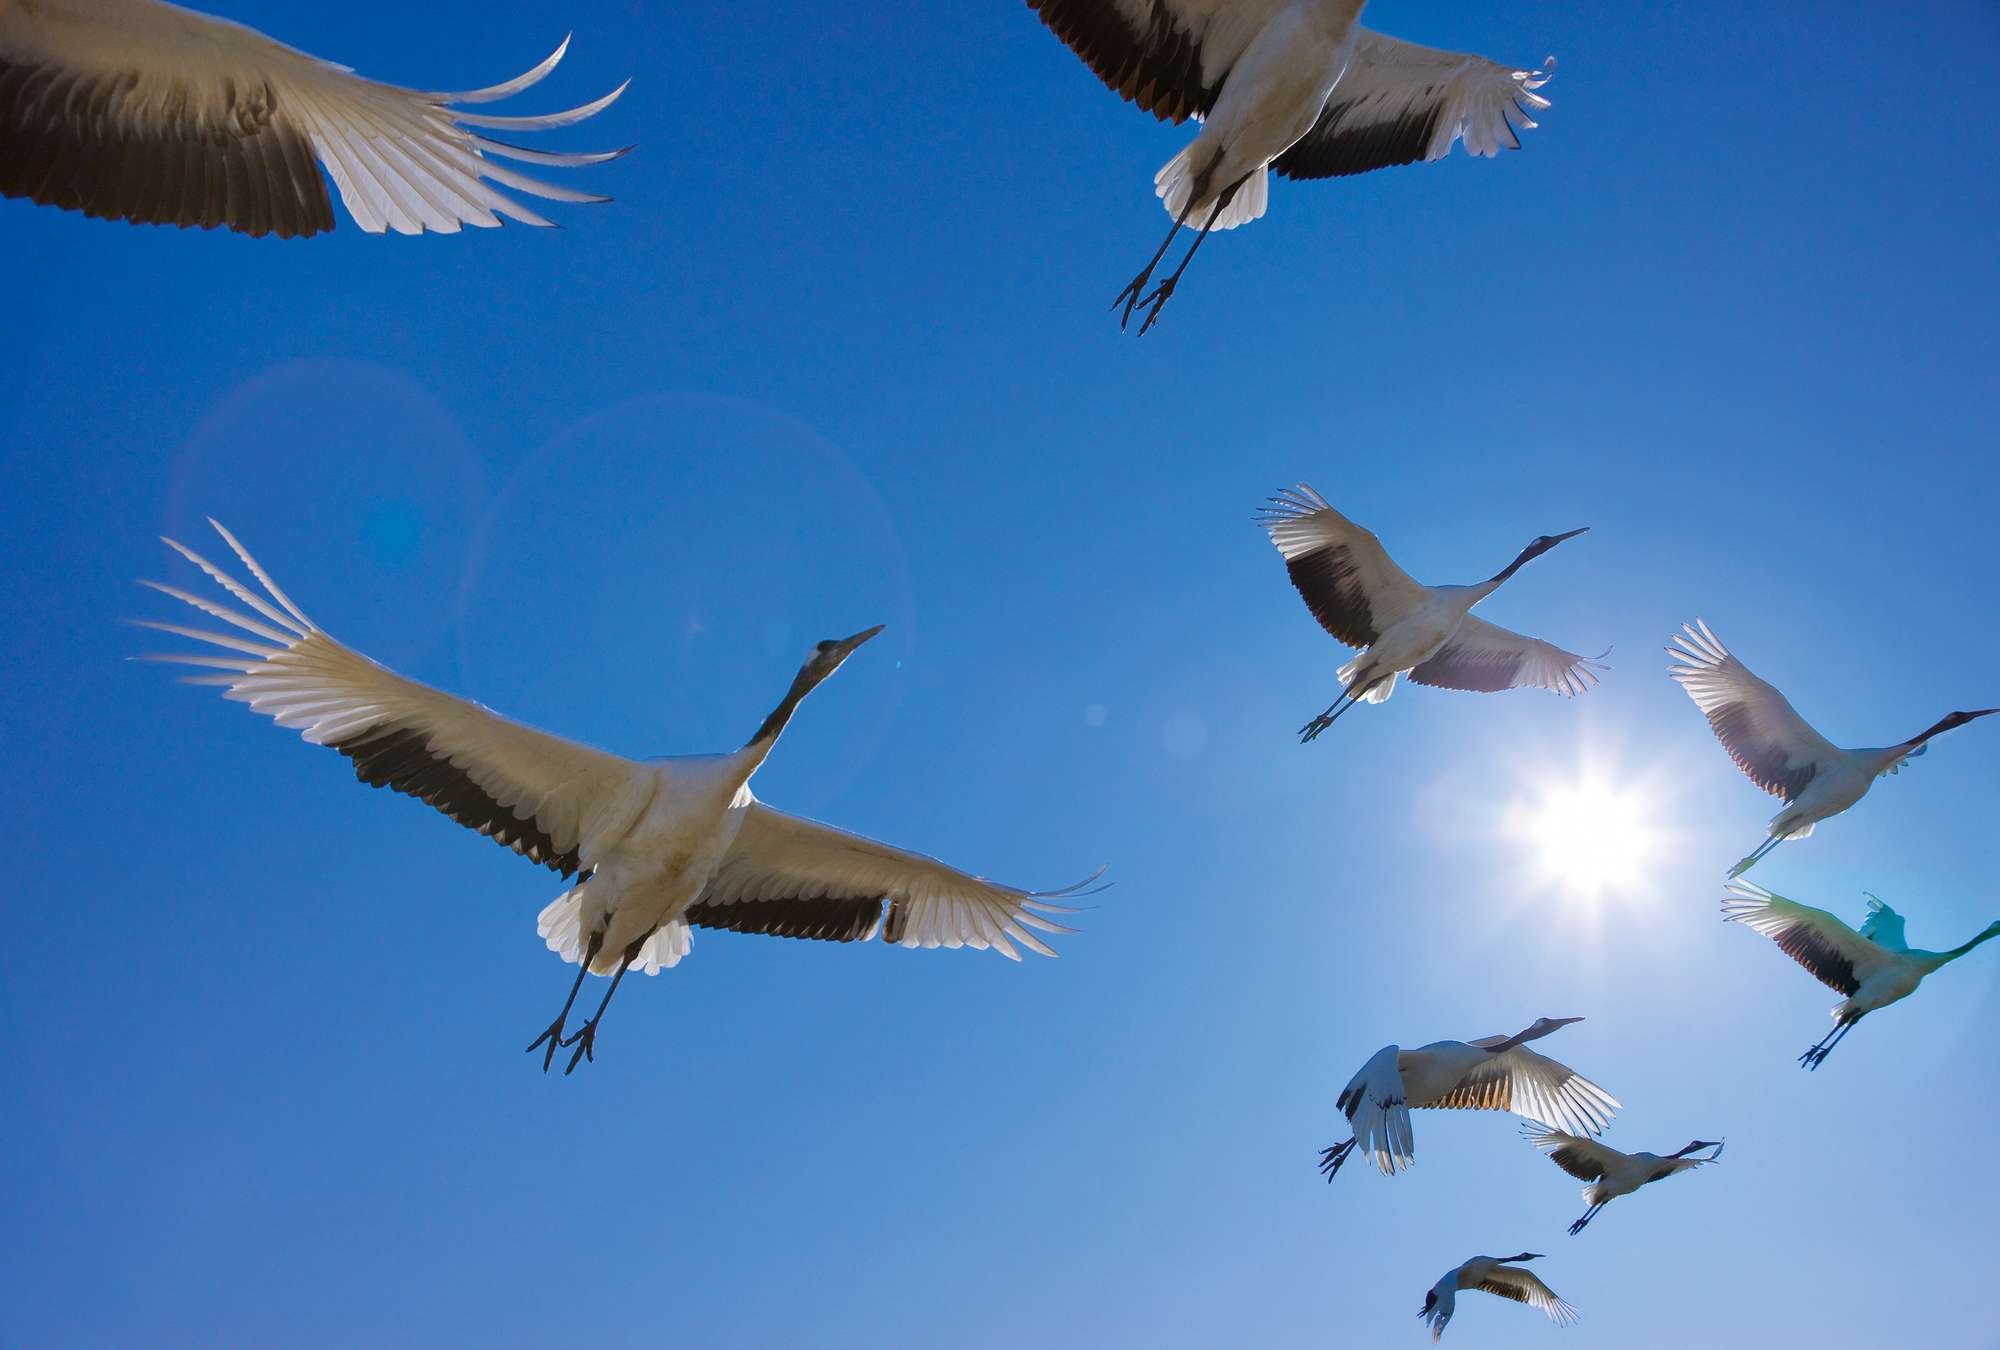             Flock of Birds - Muurschildering met trekvogels & blauwe lucht
        